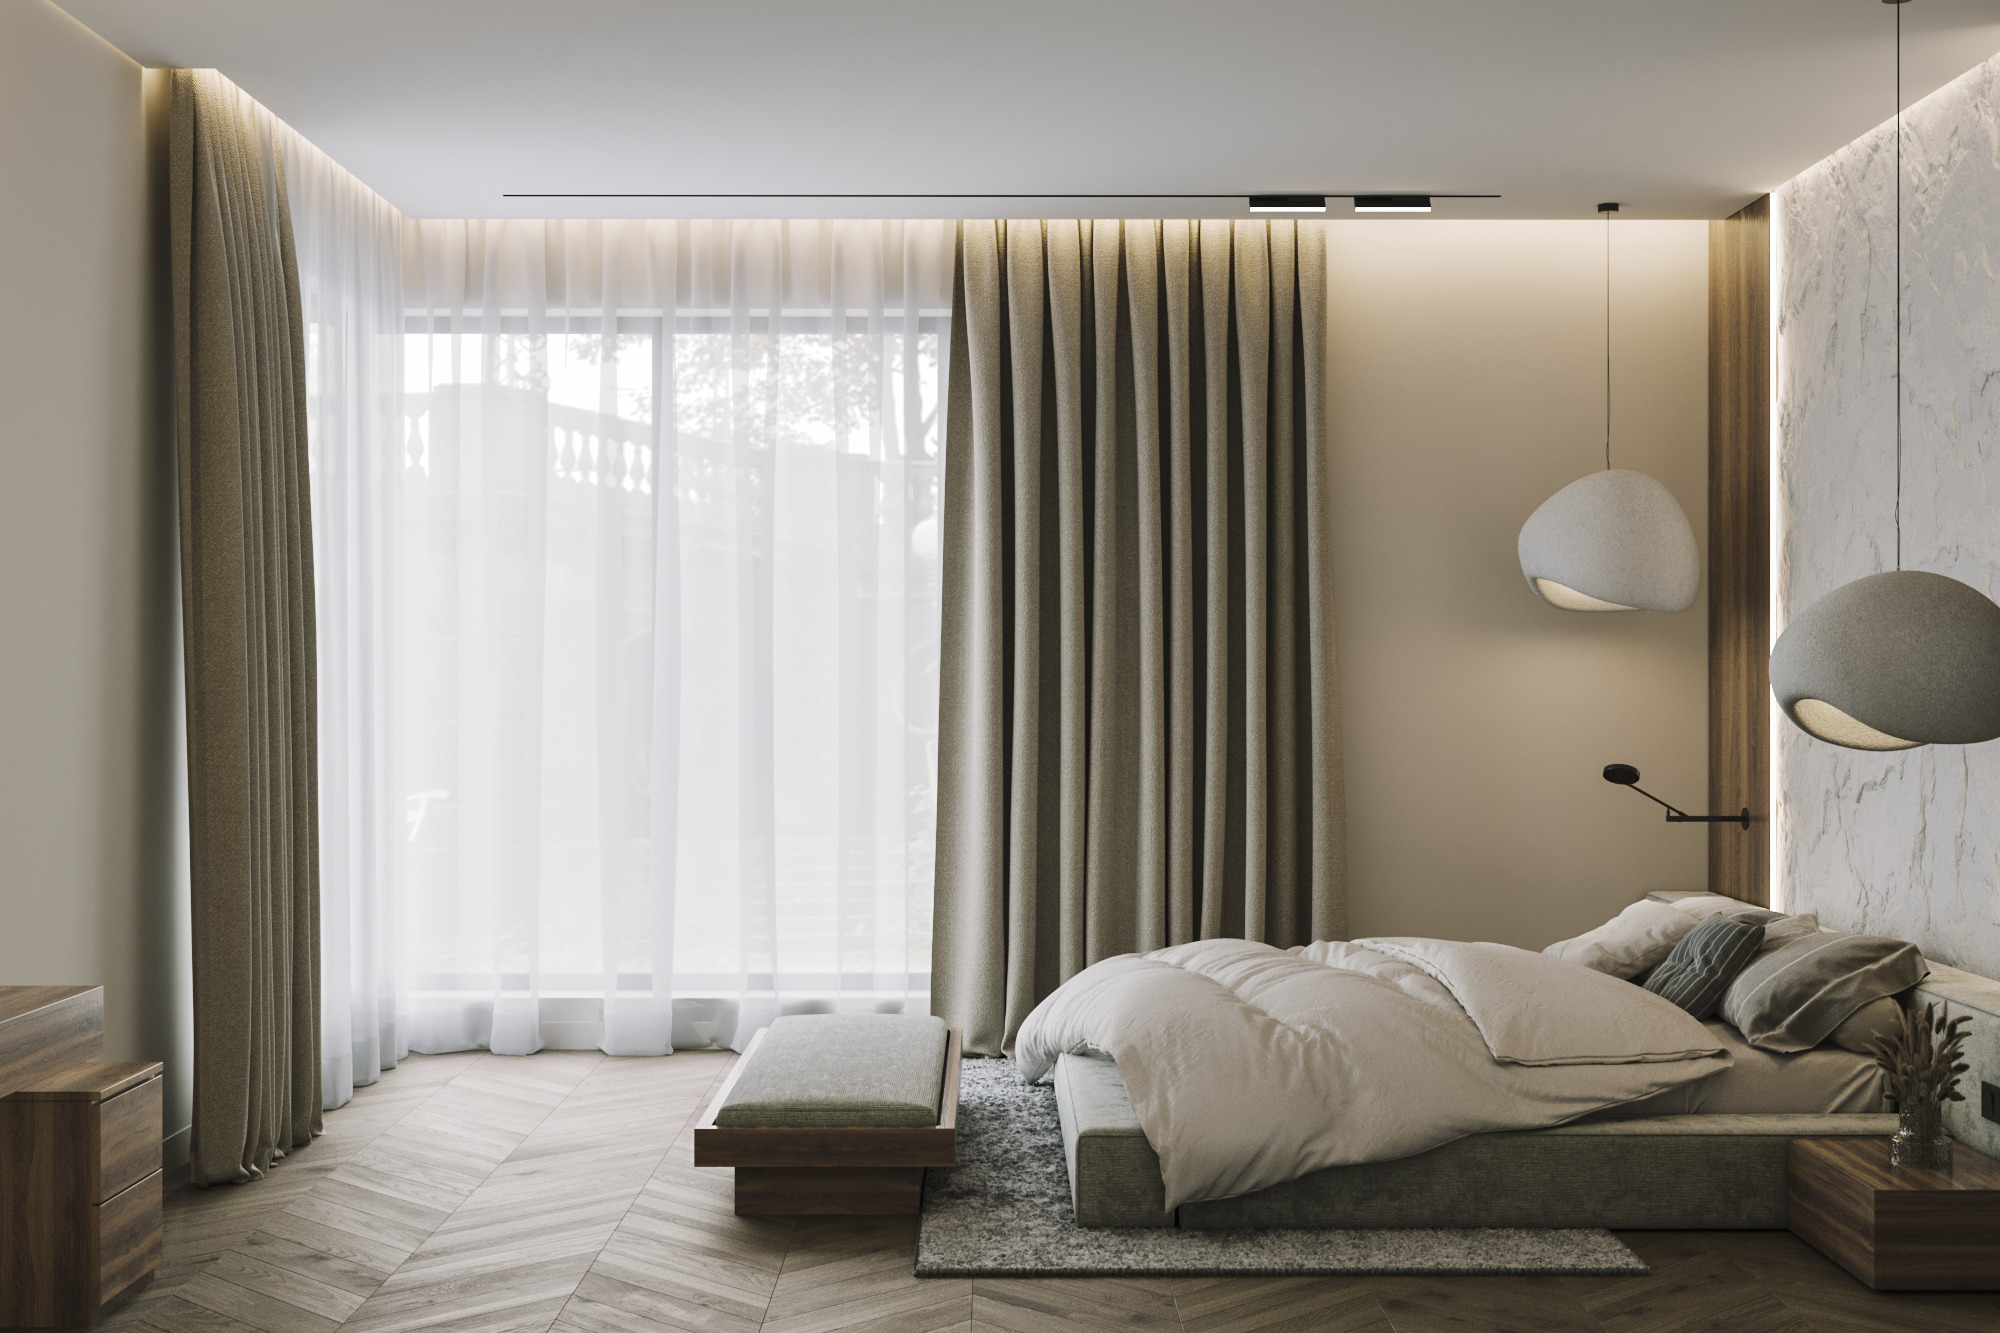 Интерьер спальни cветовыми линиями, угловым окном и рейками с подсветкой